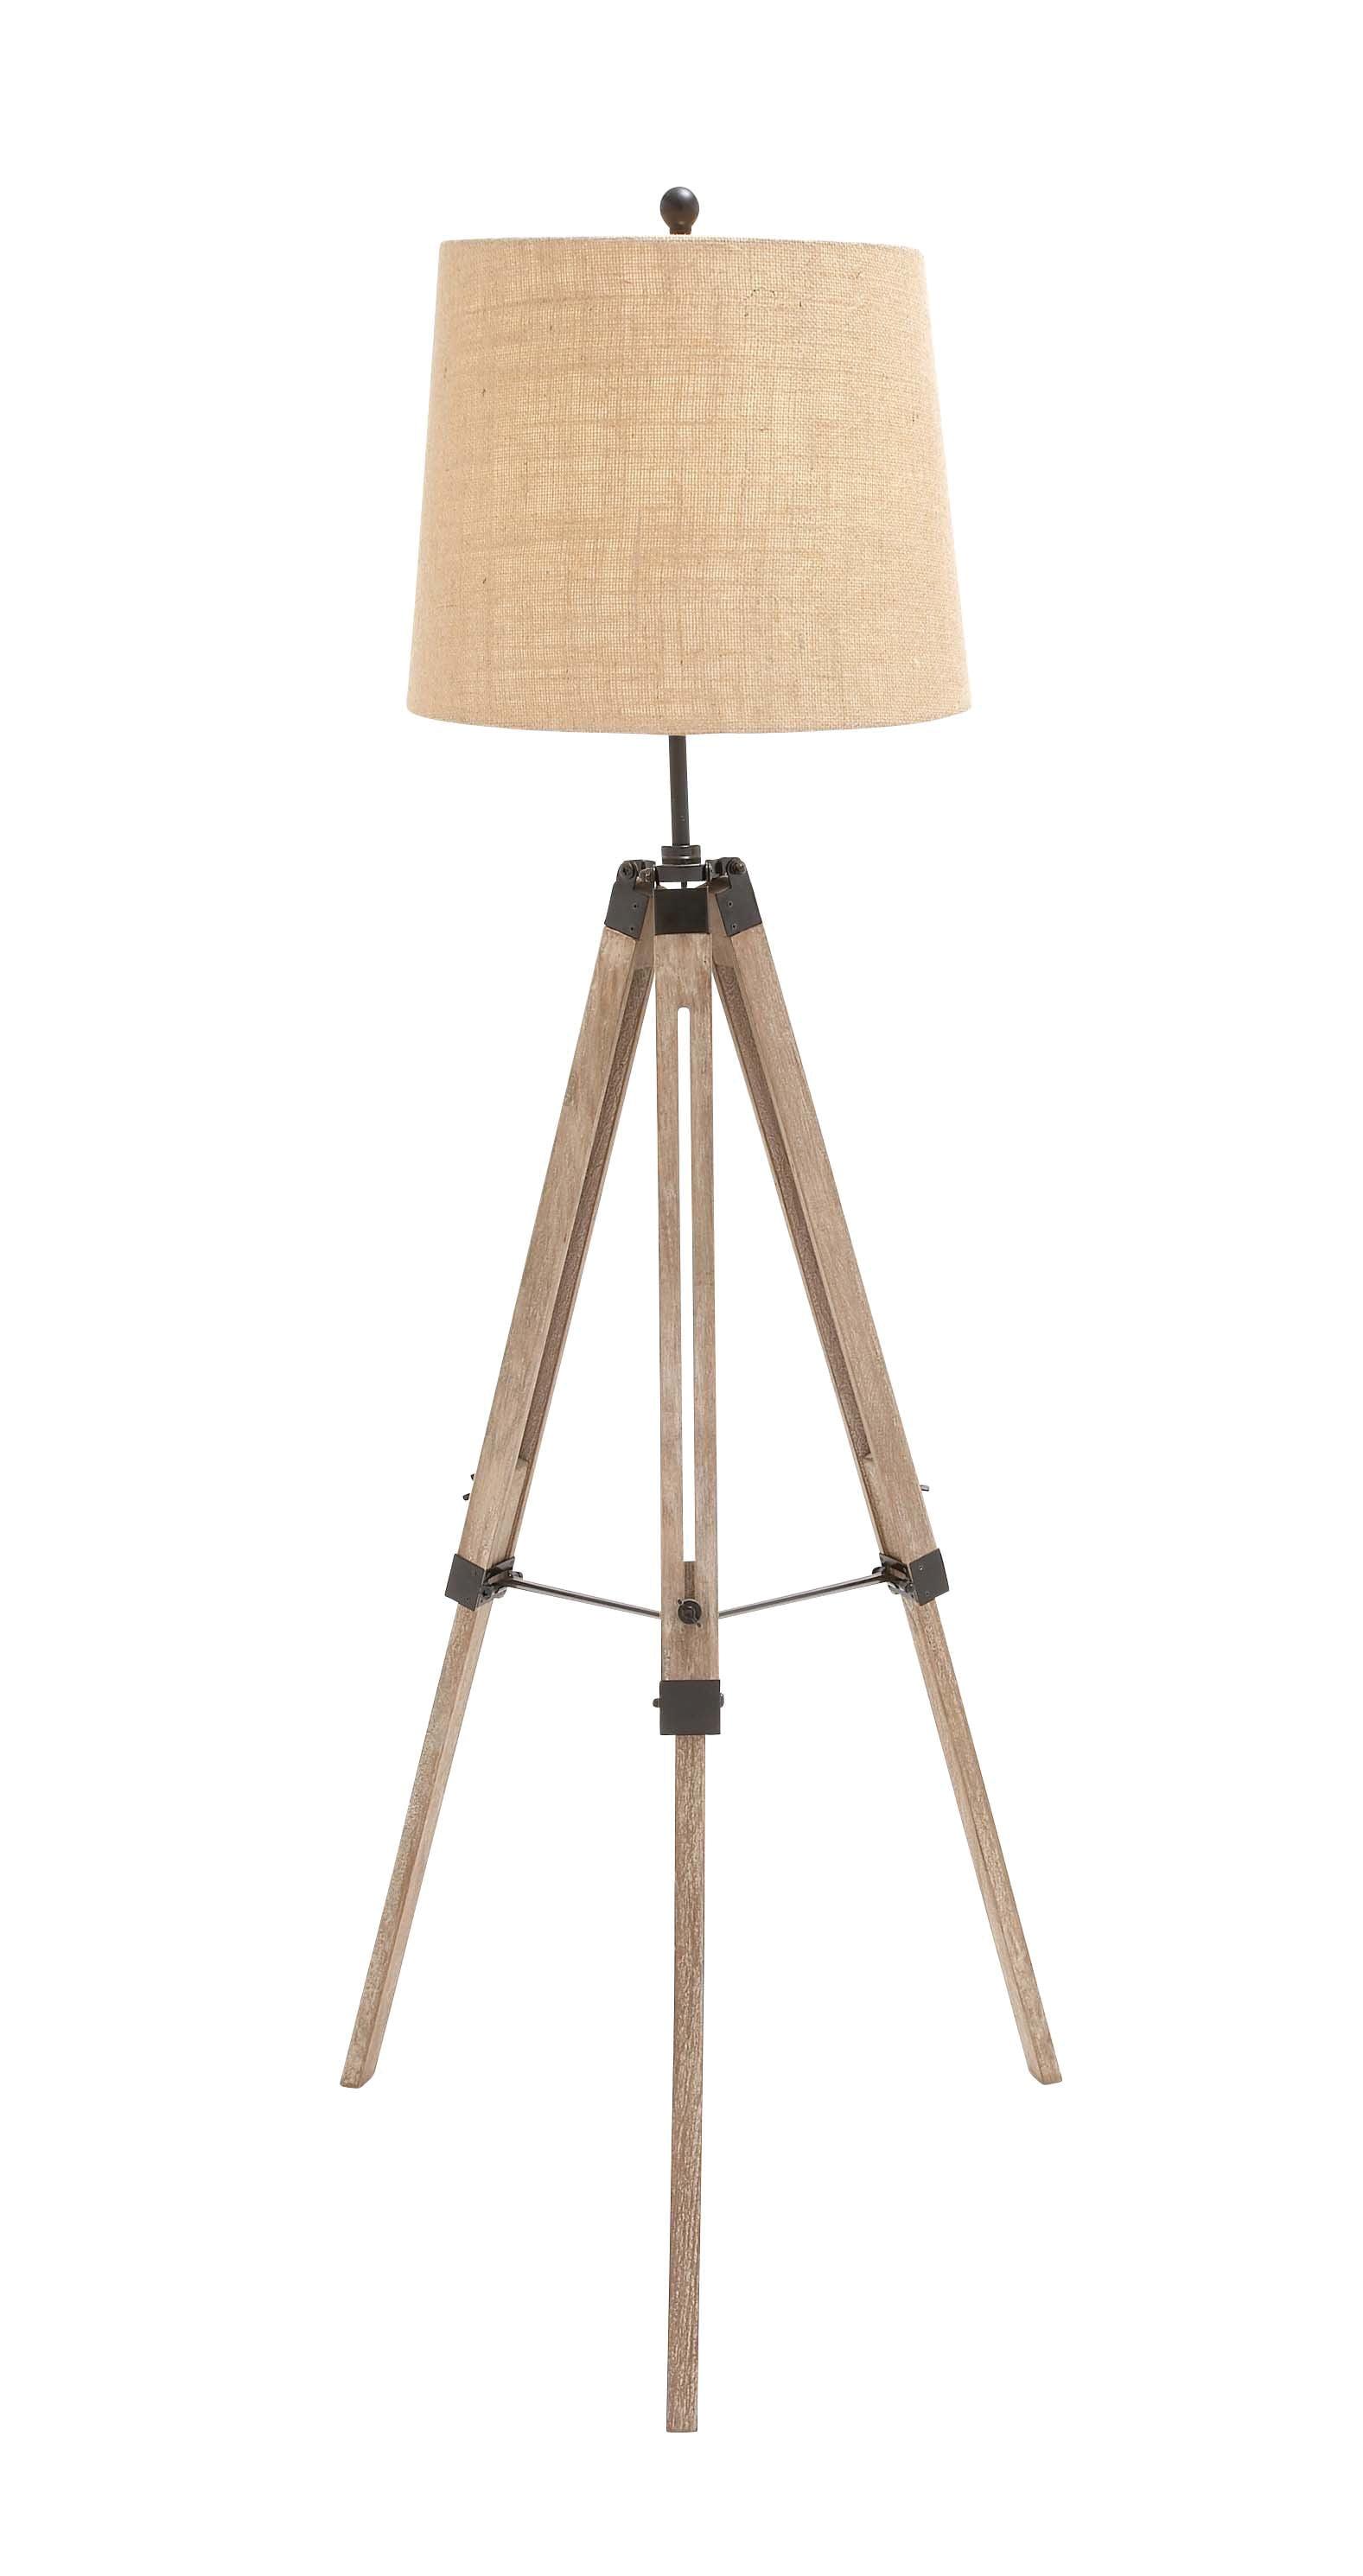 Brown Wood Adjustable Tripod Outdoor Floor Lamp 30.65"